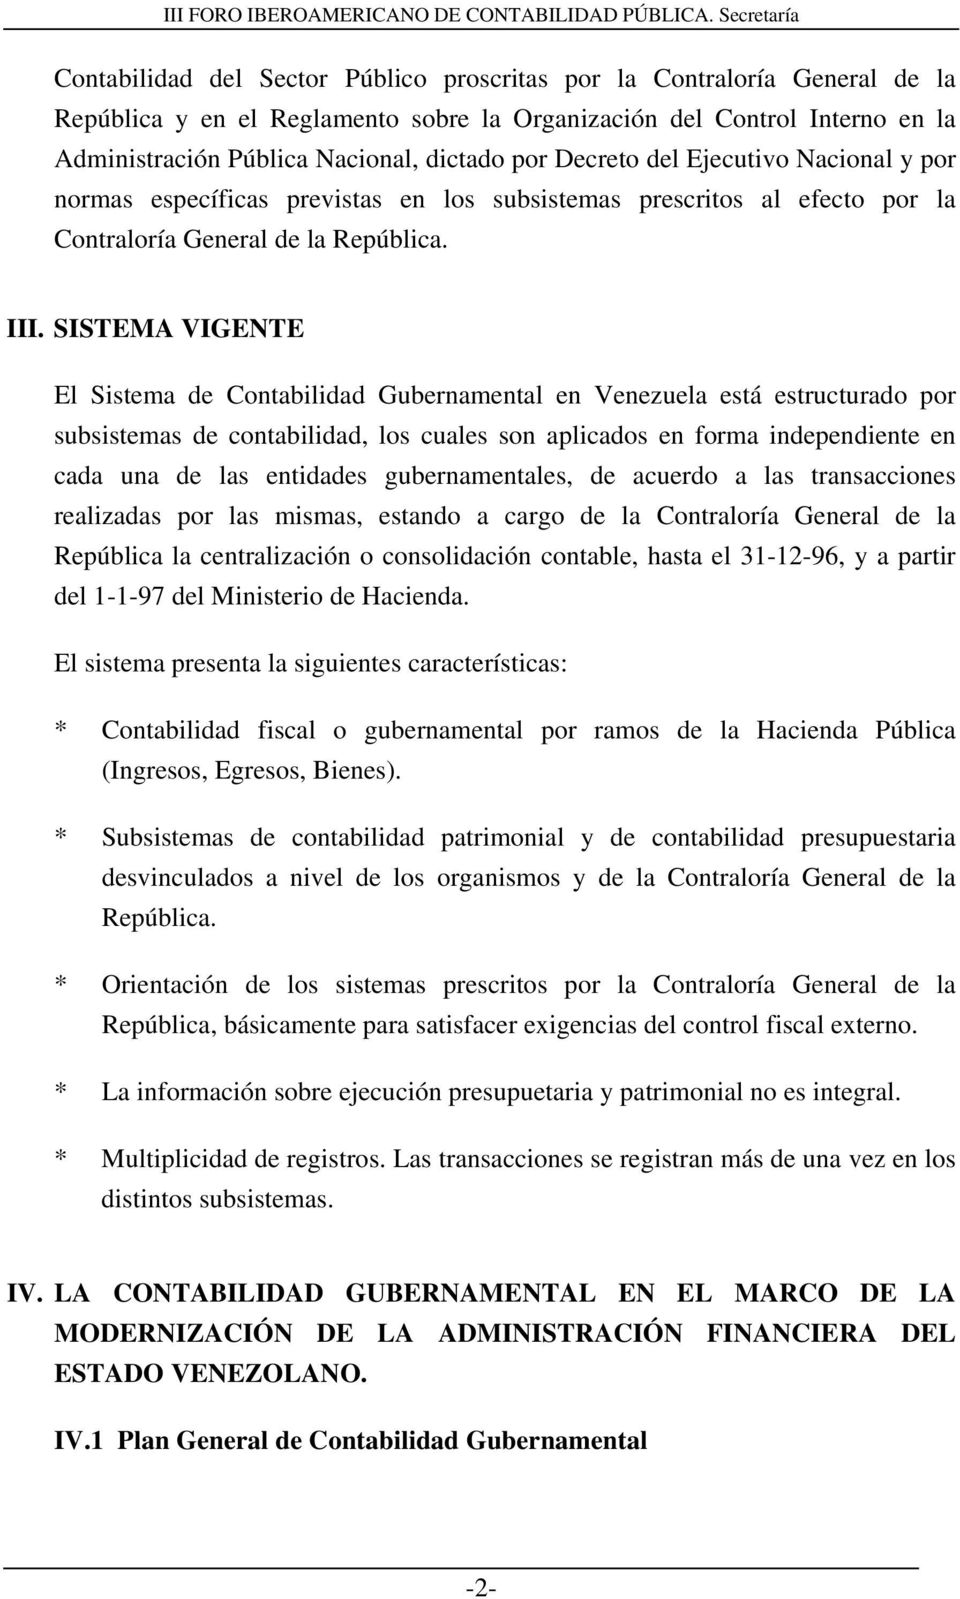 SISTEMA VIGENTE El Sistema de Contabilidad Gubernamental en Venezuela está estructurado por subsistemas de contabilidad, los cuales son aplicados en forma independiente en cada una de las entidades